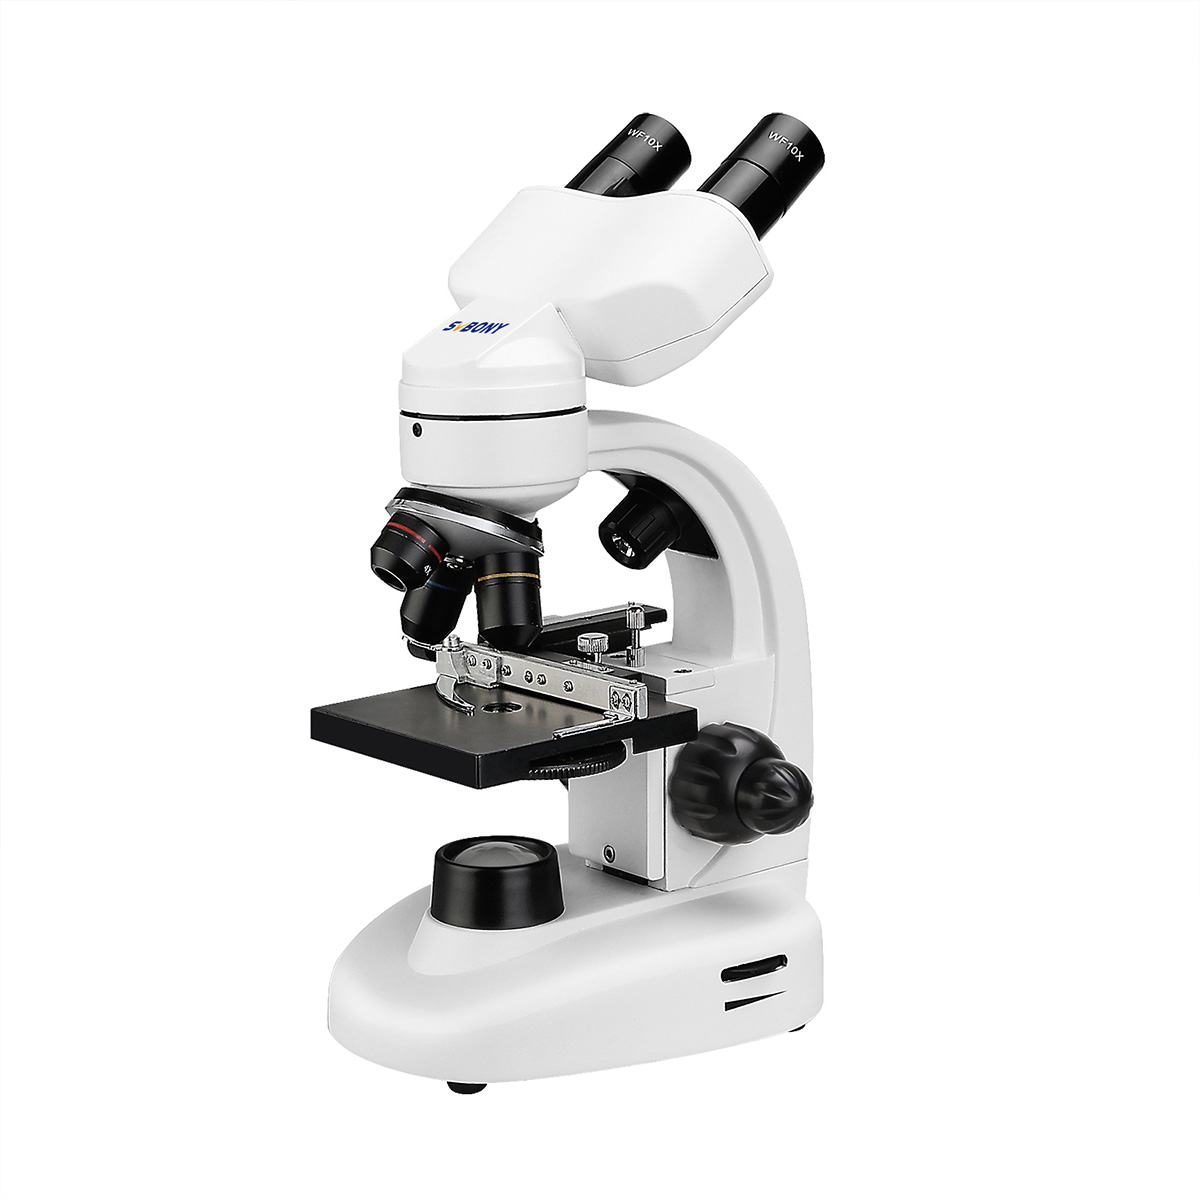 Microscope biologique binoculaire 40-800x – Boutique de télescopes